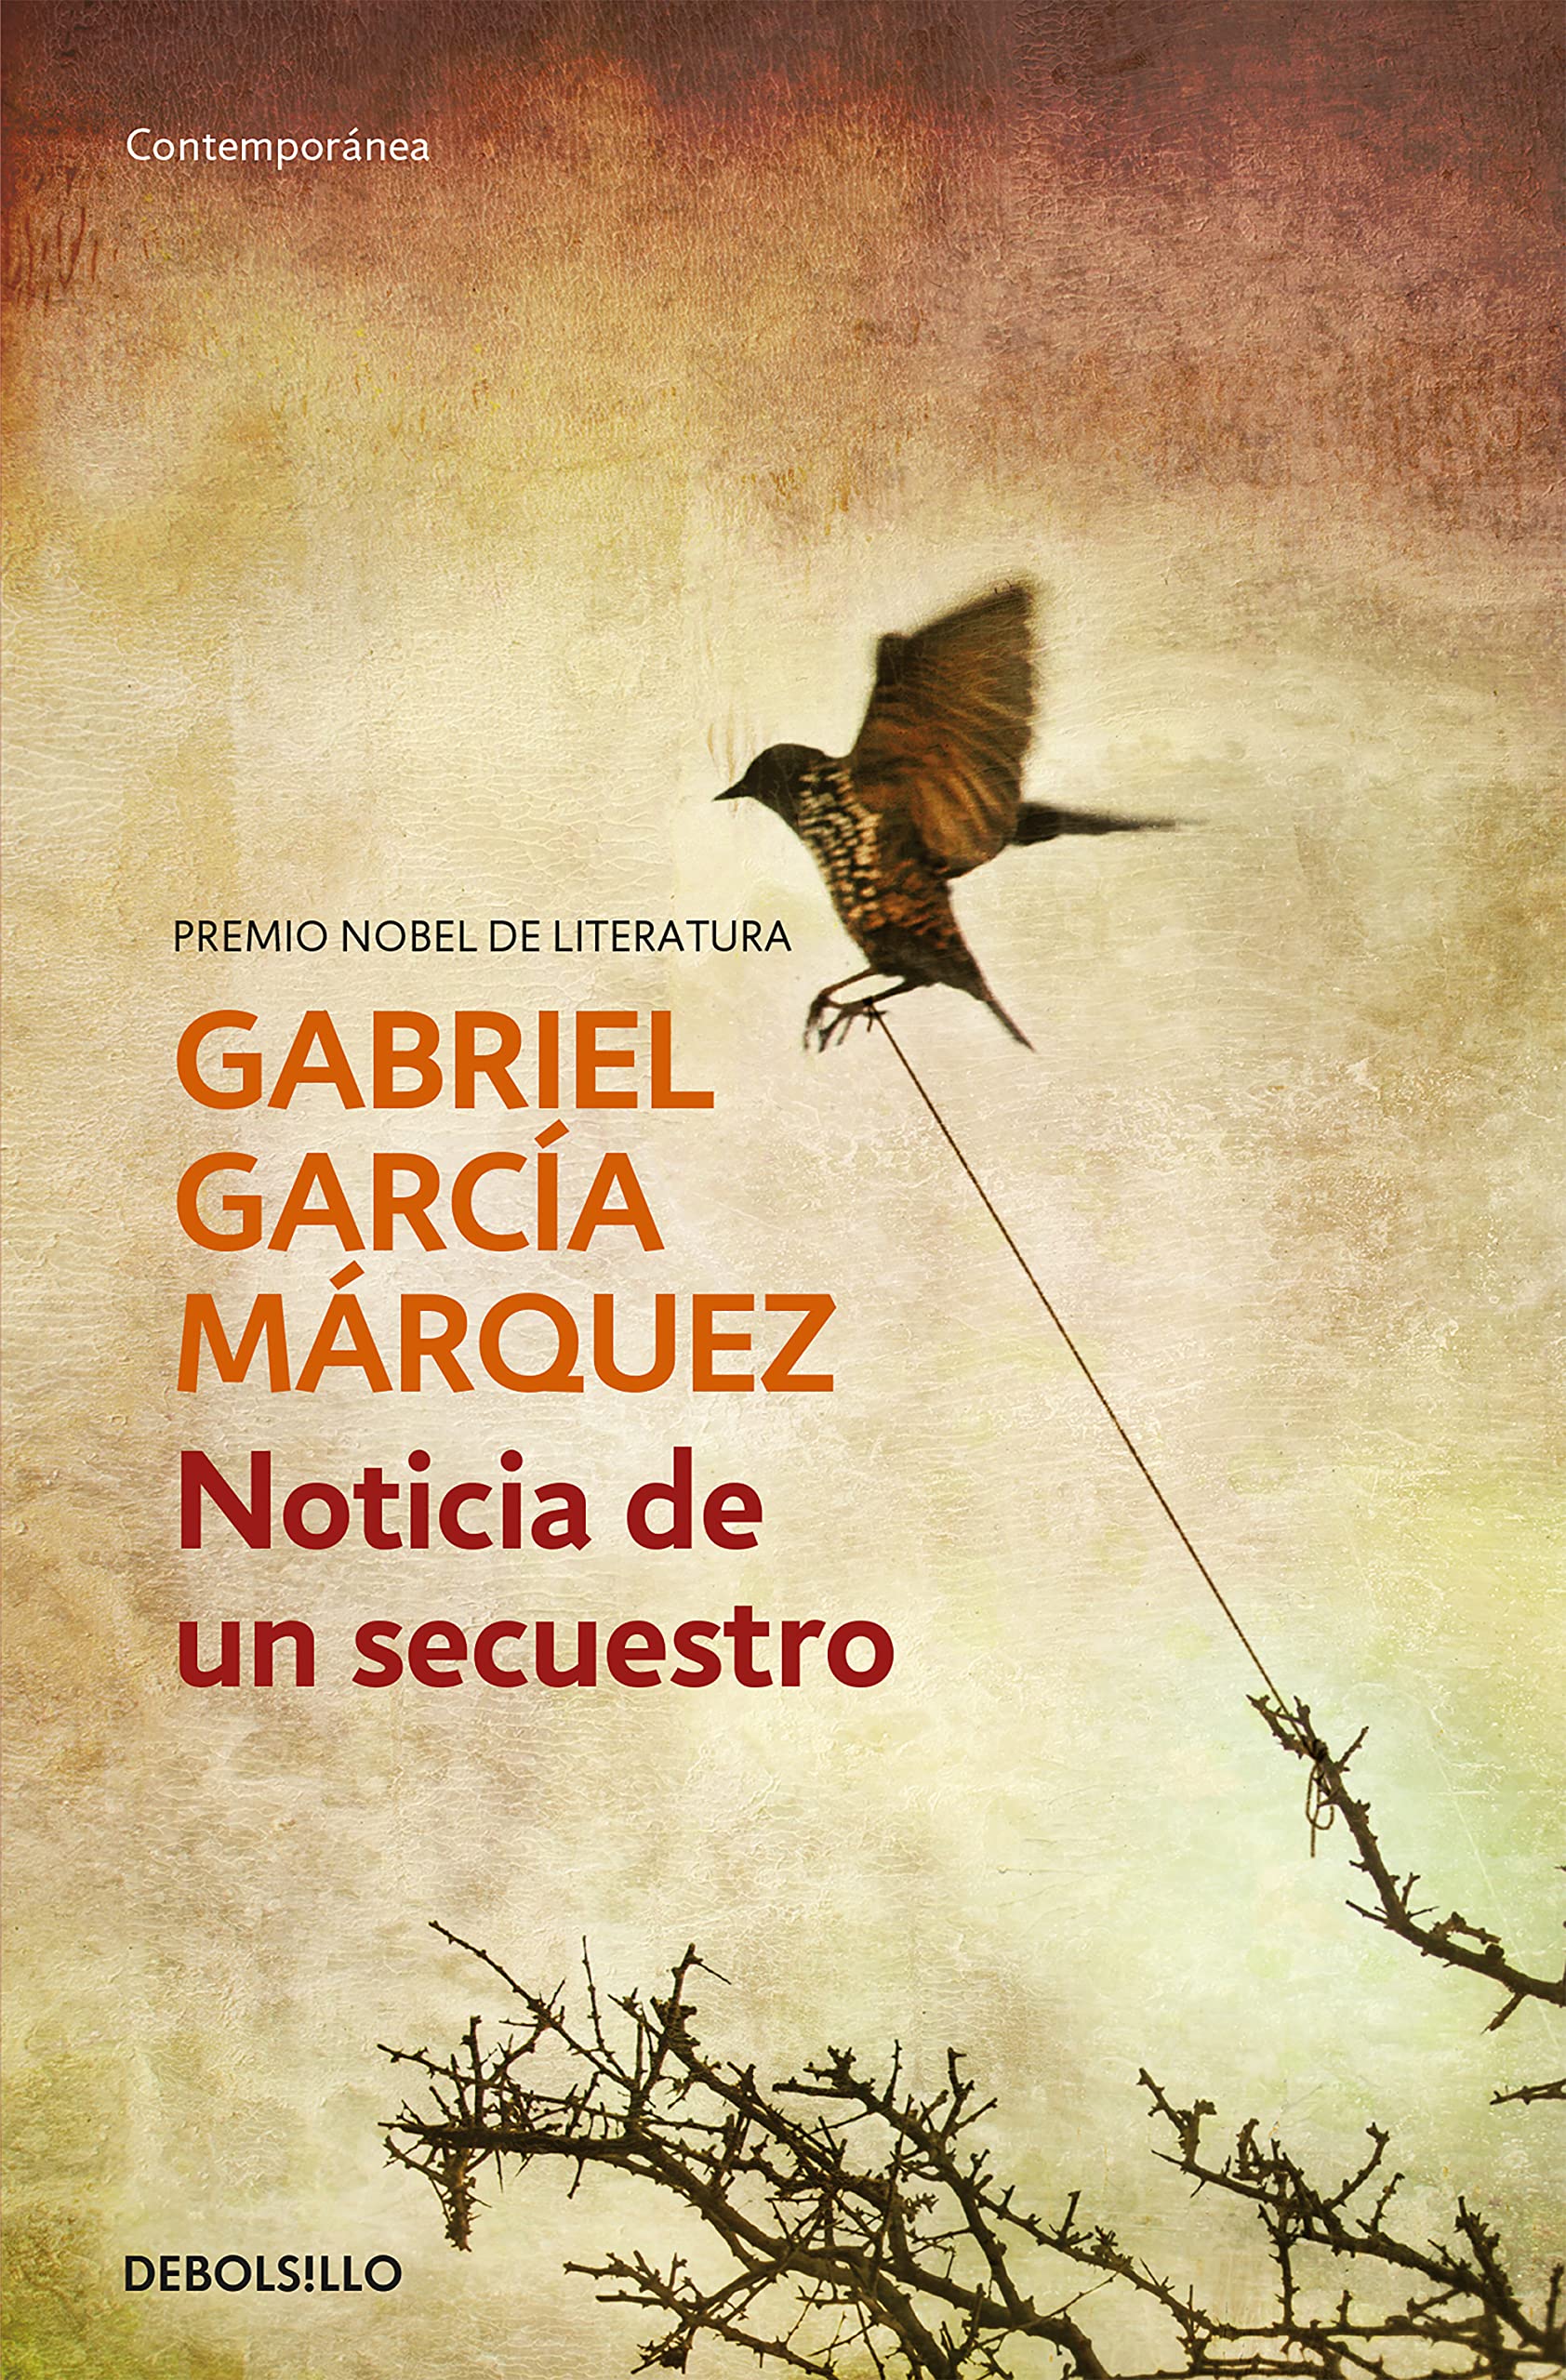 Zenda recomienda: Noticia de un secuestro, de Gabriel García Márquez